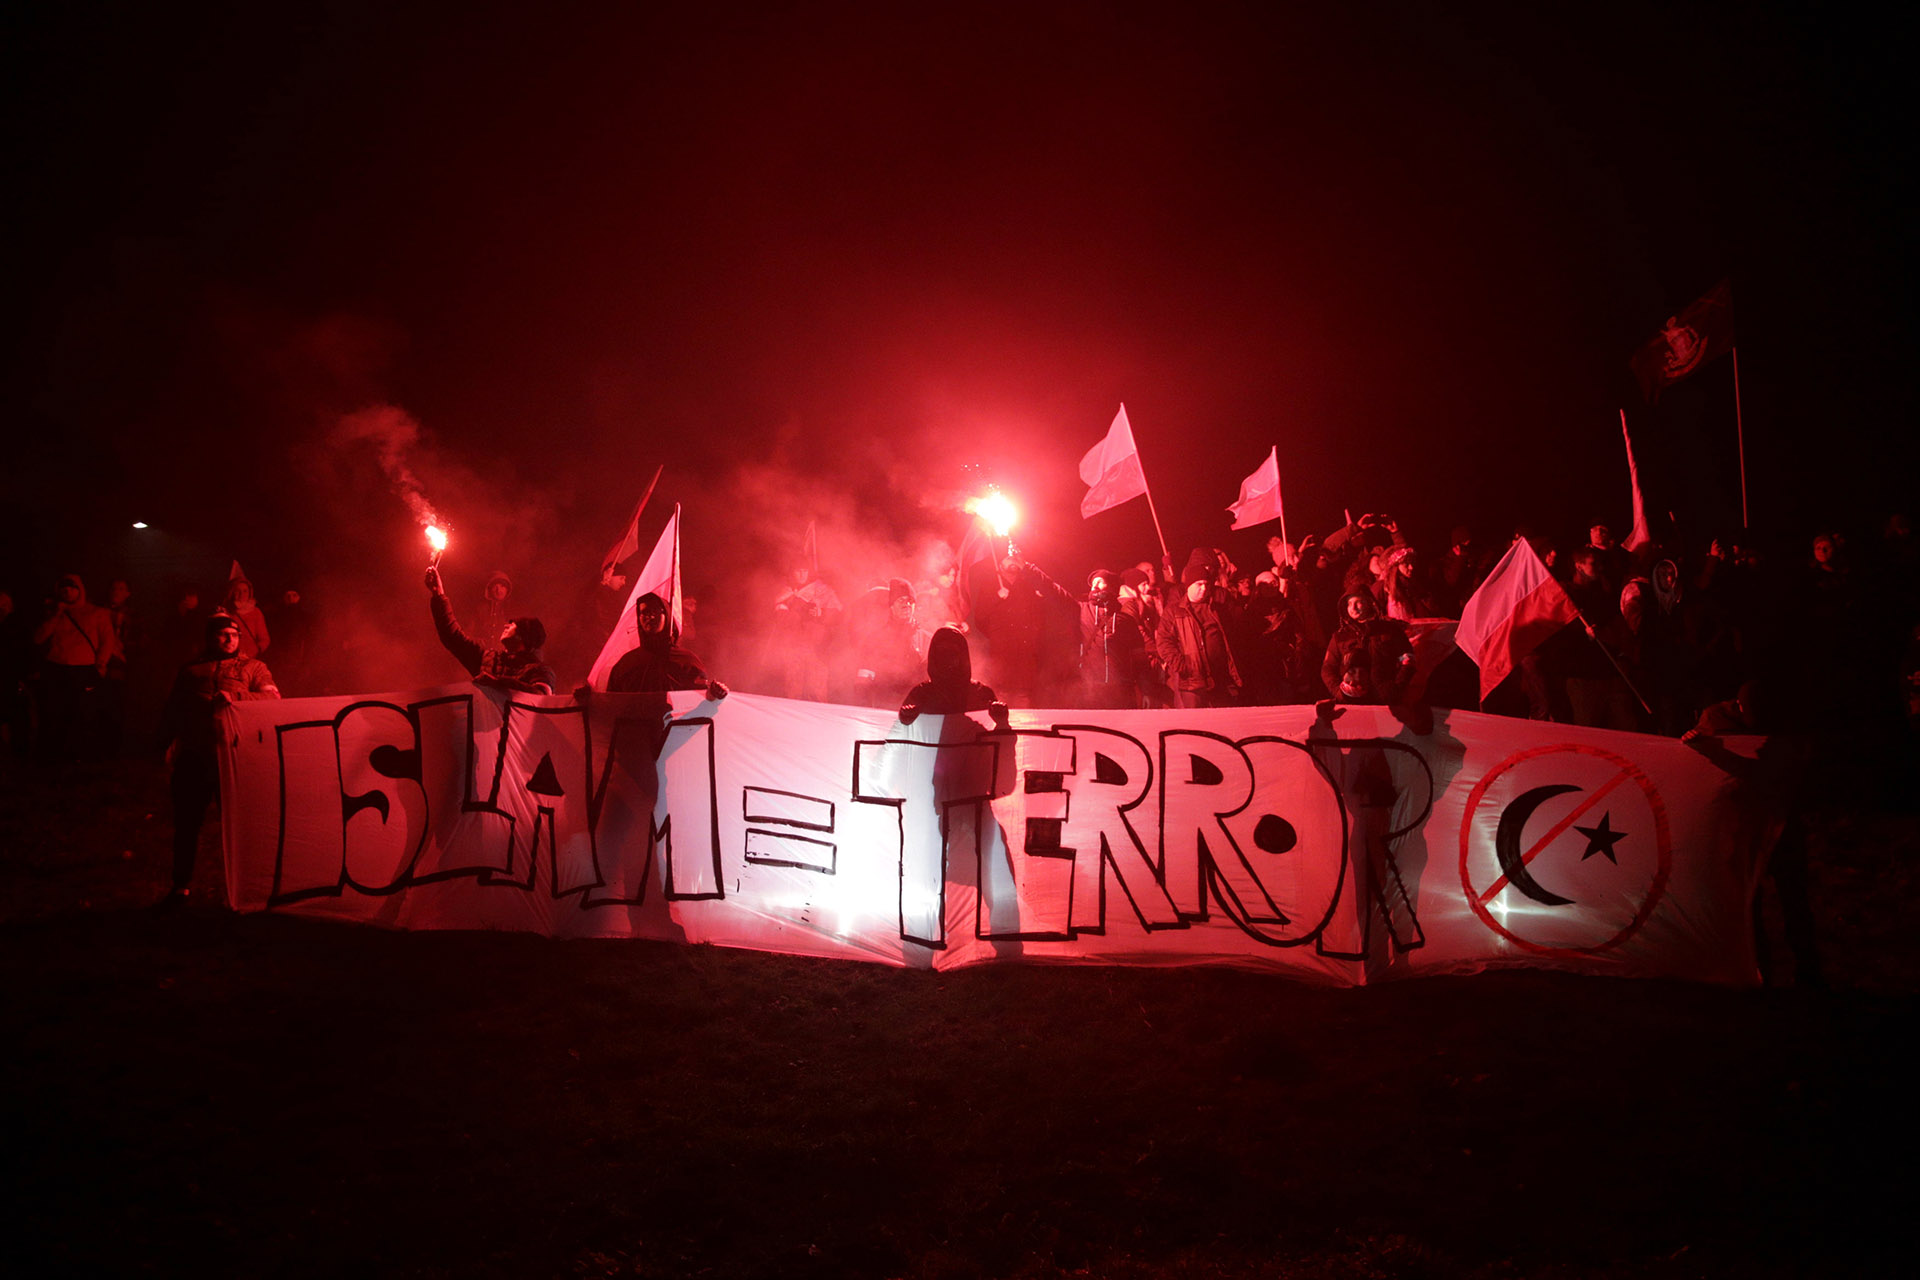 El pasado sábado 11 de noviembre tuvo lugar en las calles de Varsovia una marcha nacionalista en la que participaron alrededor de 60,000 personas que gritaron consignas como: “Polonia pura, Polonia blanca”, “Dios, honor, país” y “Fuera Refugiados”, además de portar banderolas con símbolos fascistas.